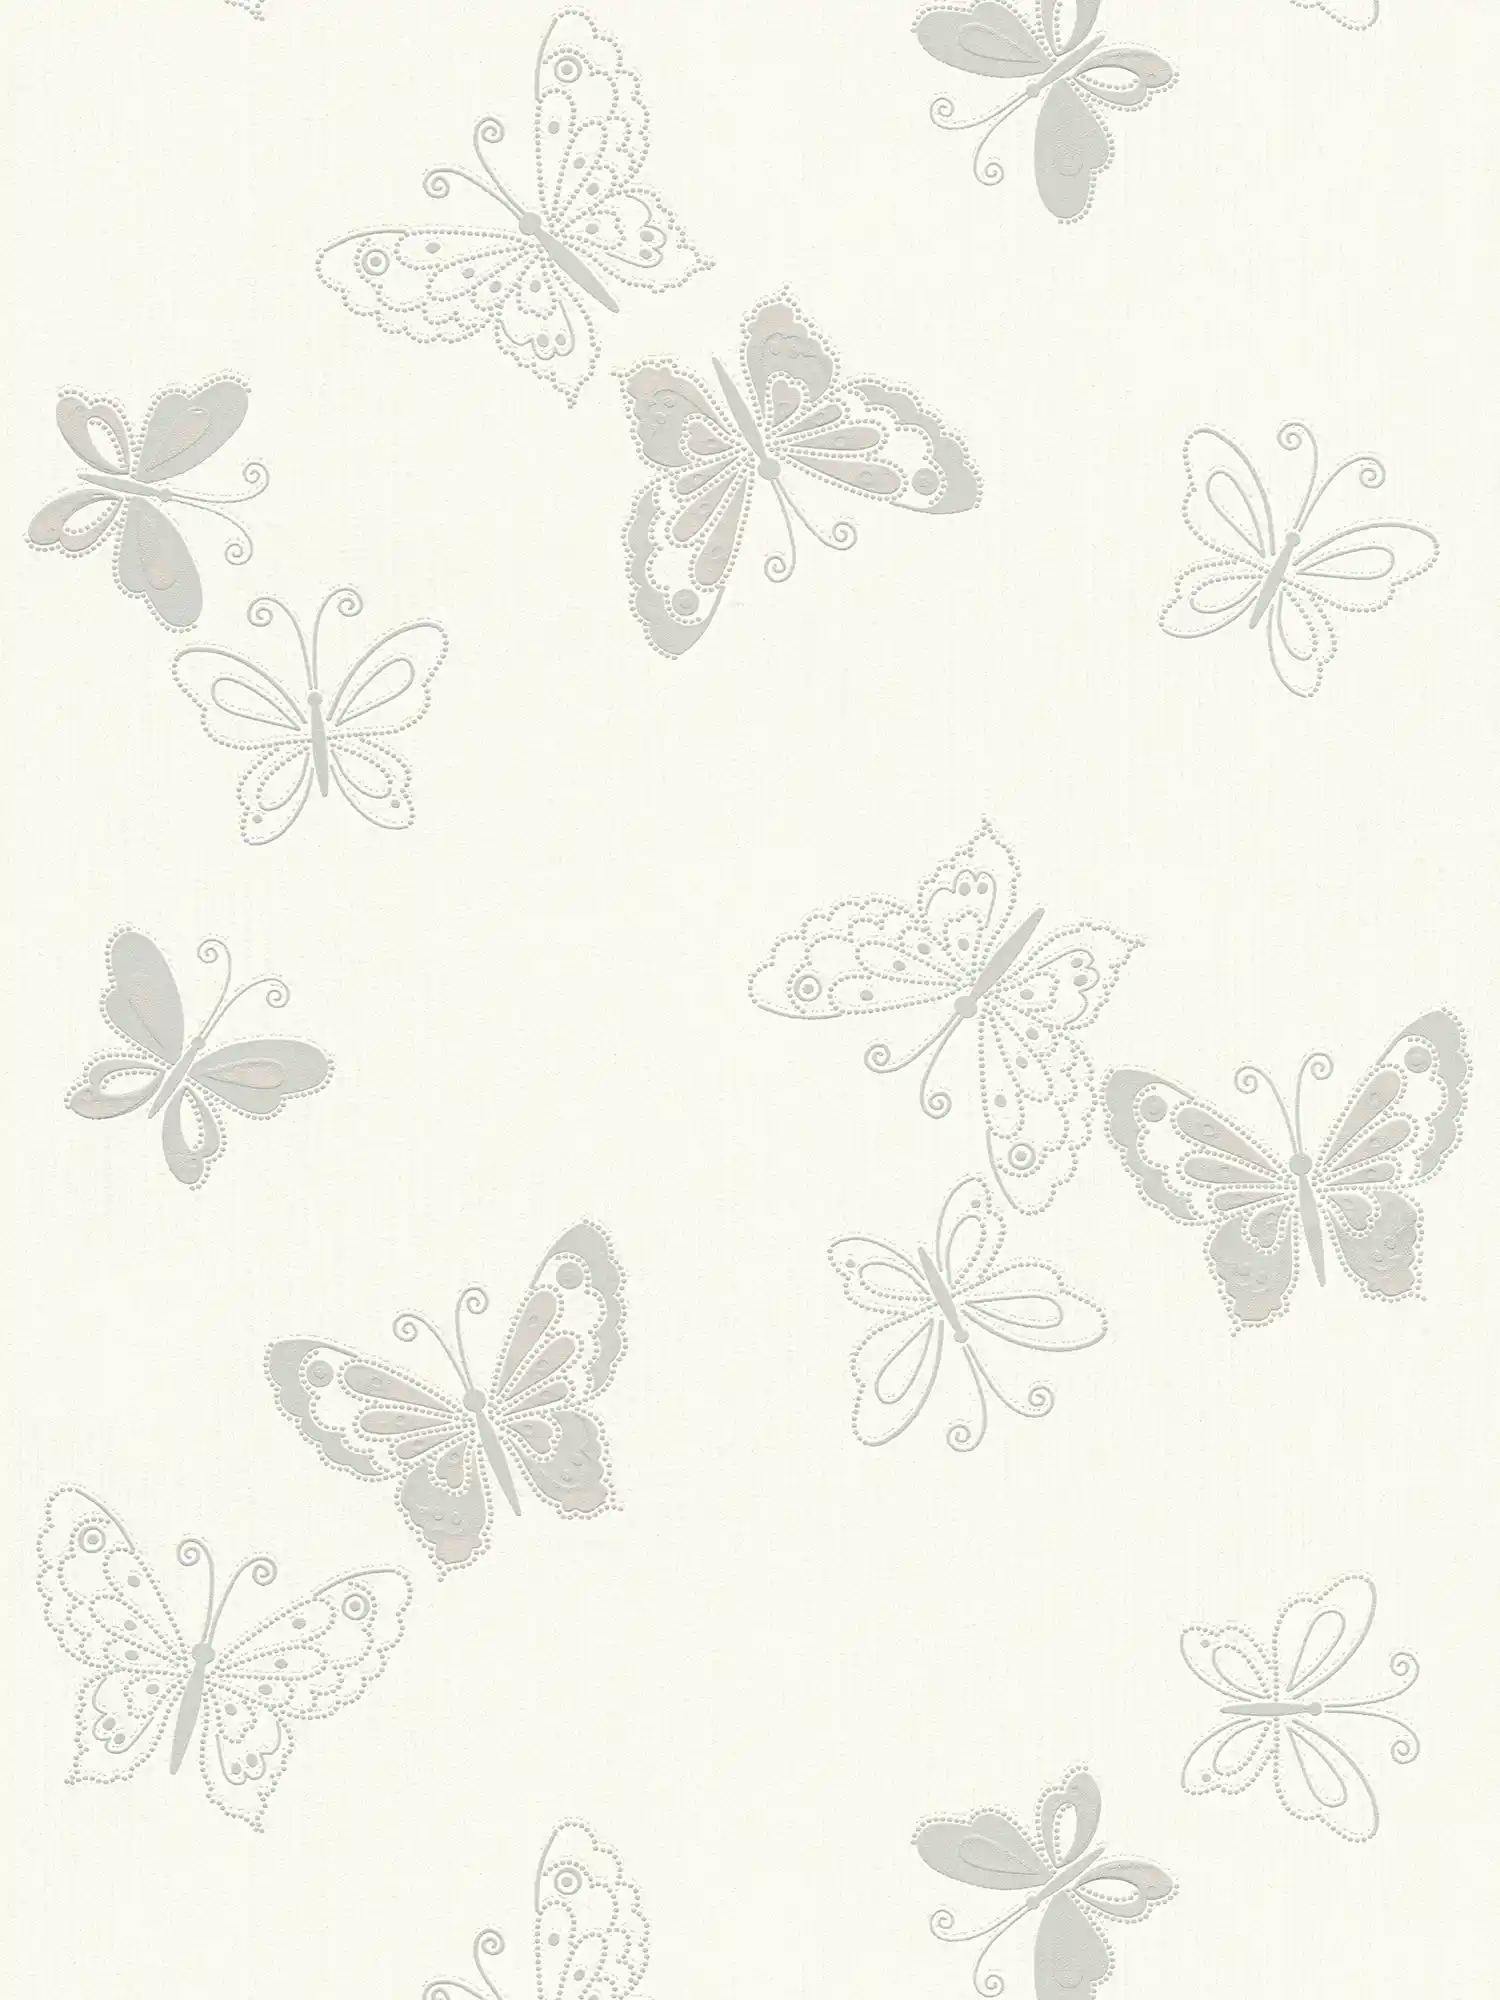 Butterfly wallpaper with metallic effect - beige, silver
